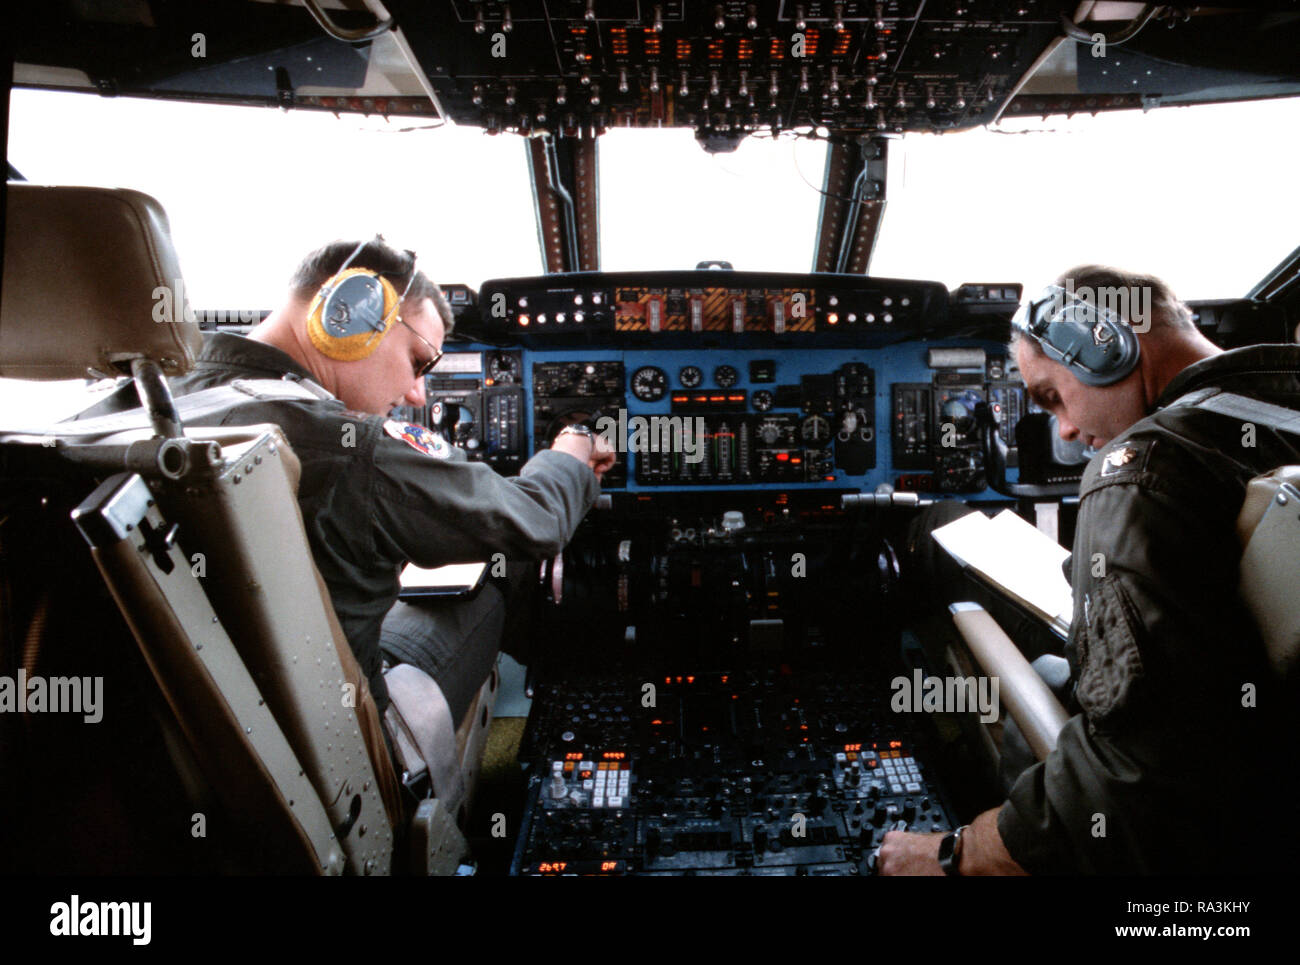 1979 - Un pilote et copilote d'exploiter la nouvelle triple système de navigation à inertie (INS) dans le cockpit d'un C-5A Galaxy avion pendant la galaxie VOLANT programme. Banque D'Images